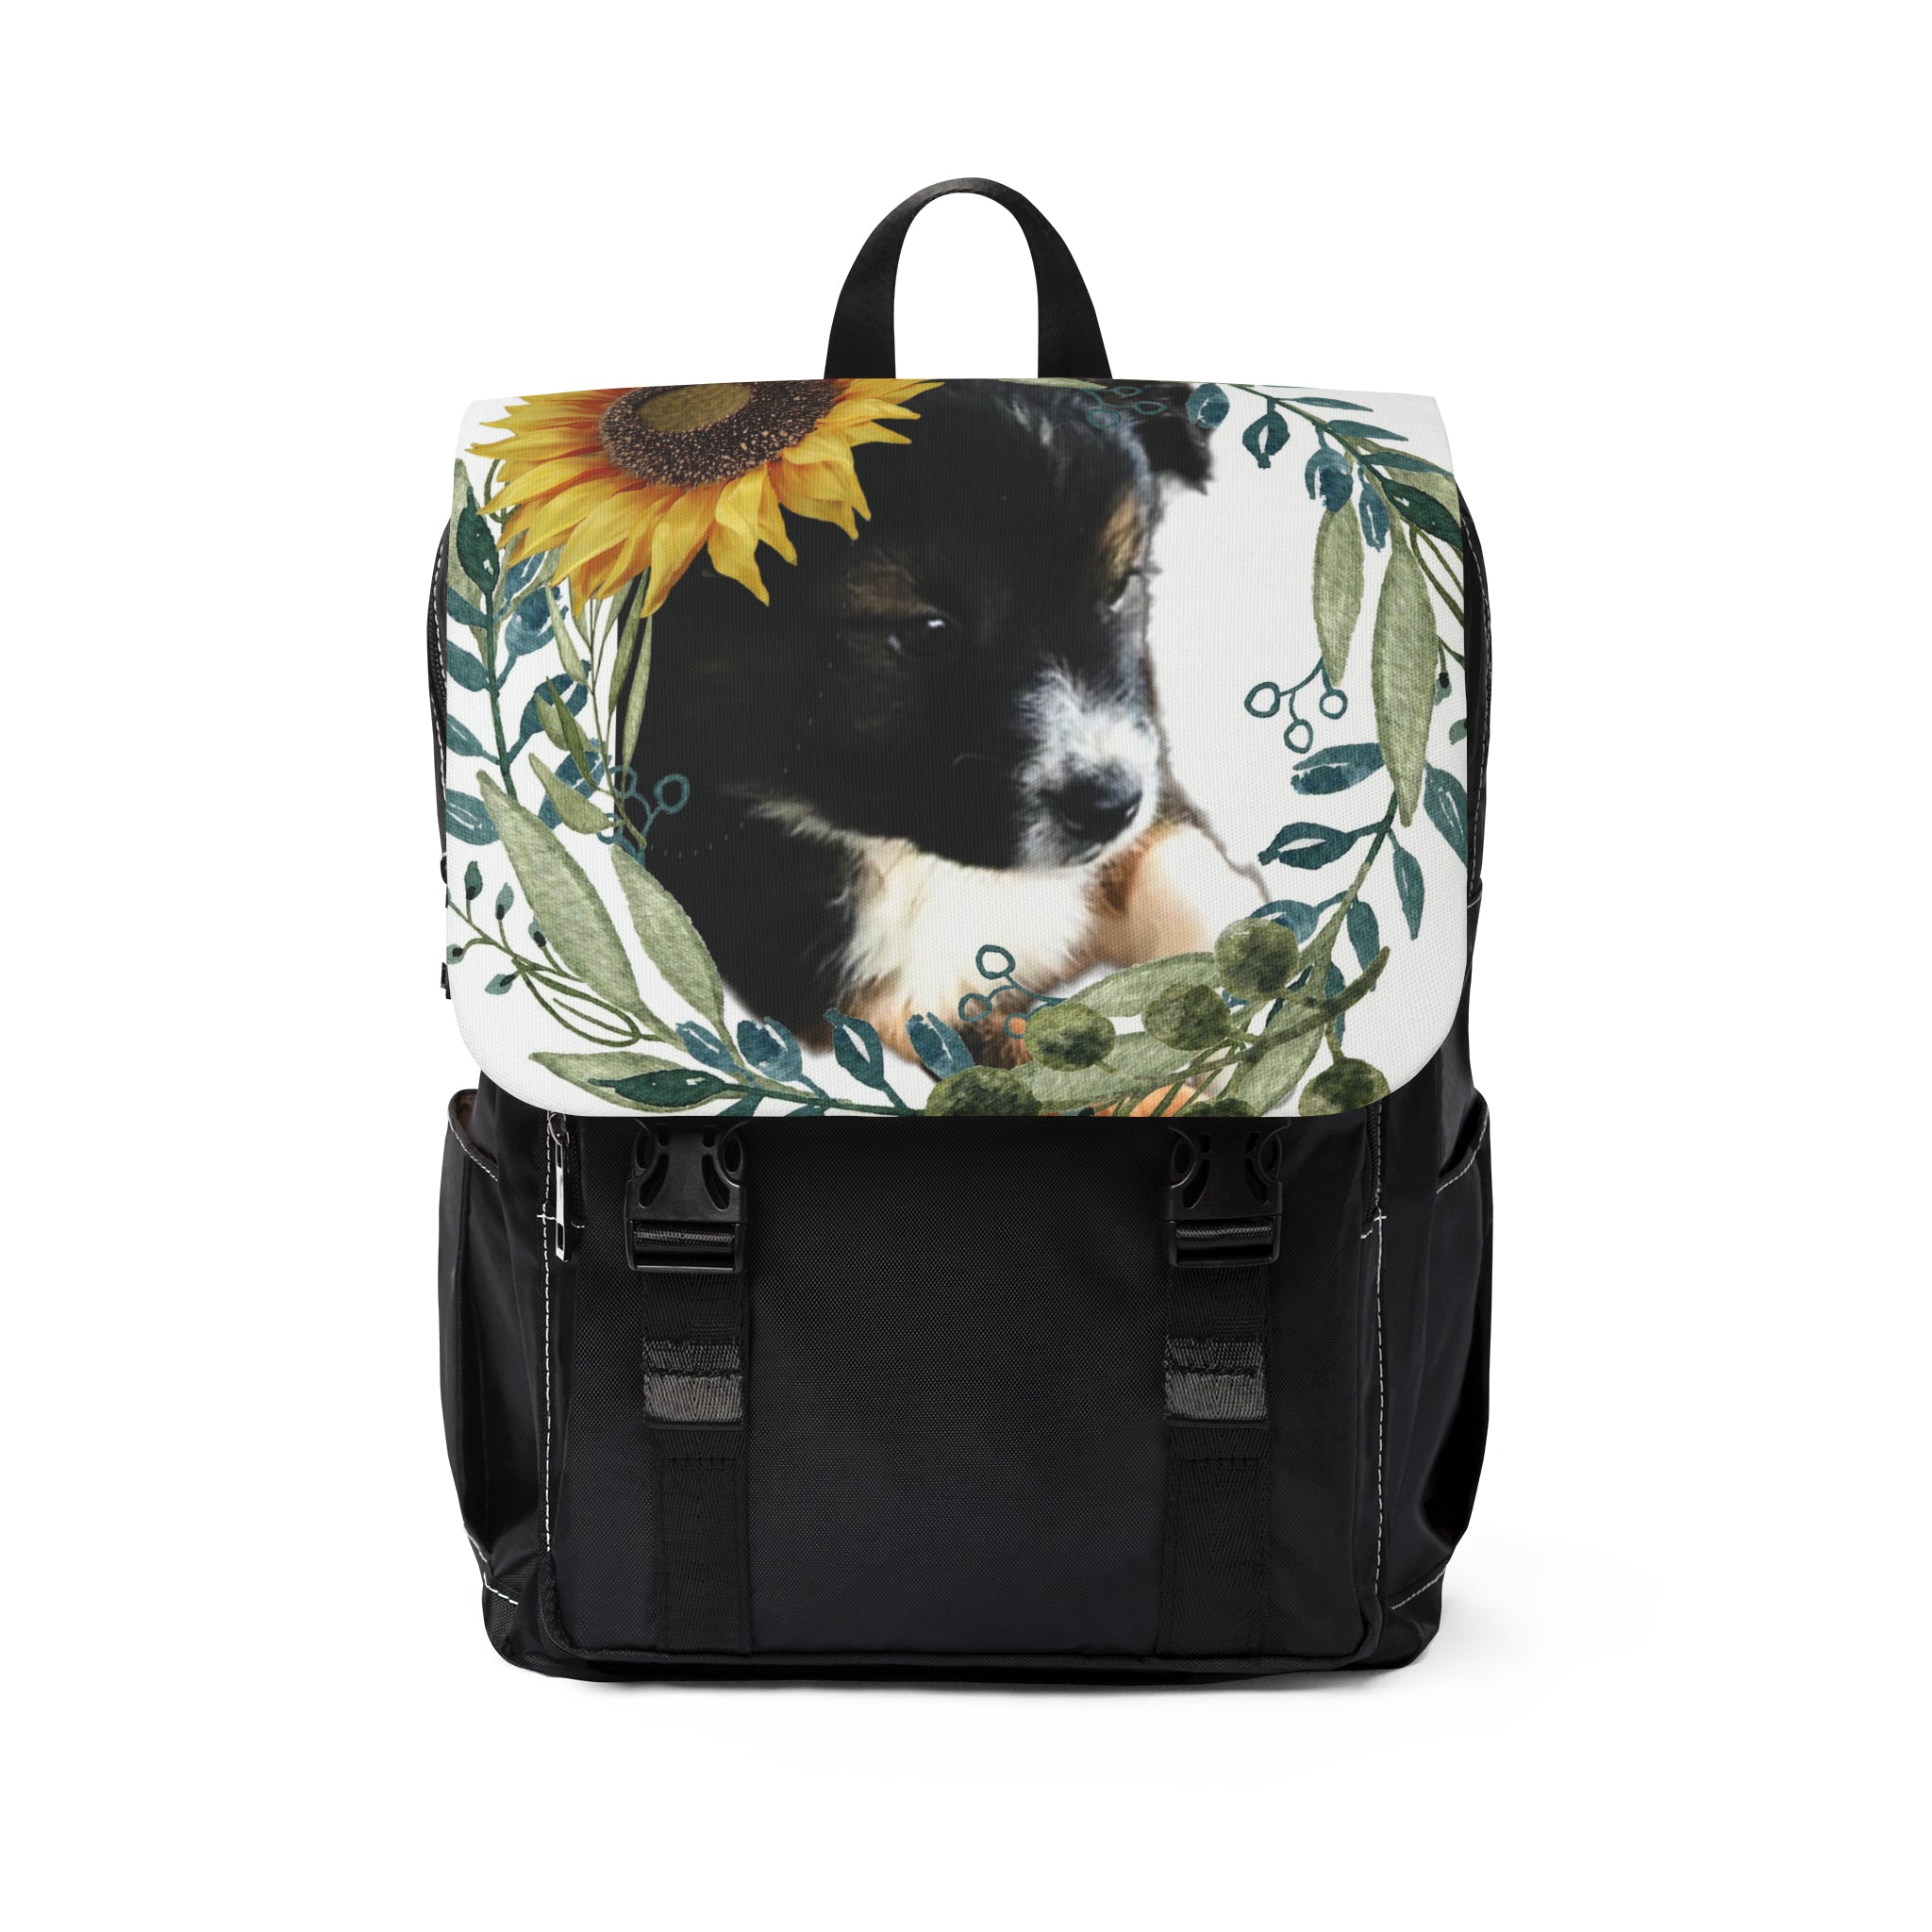 Cute Black Puppy Backpack Bundle